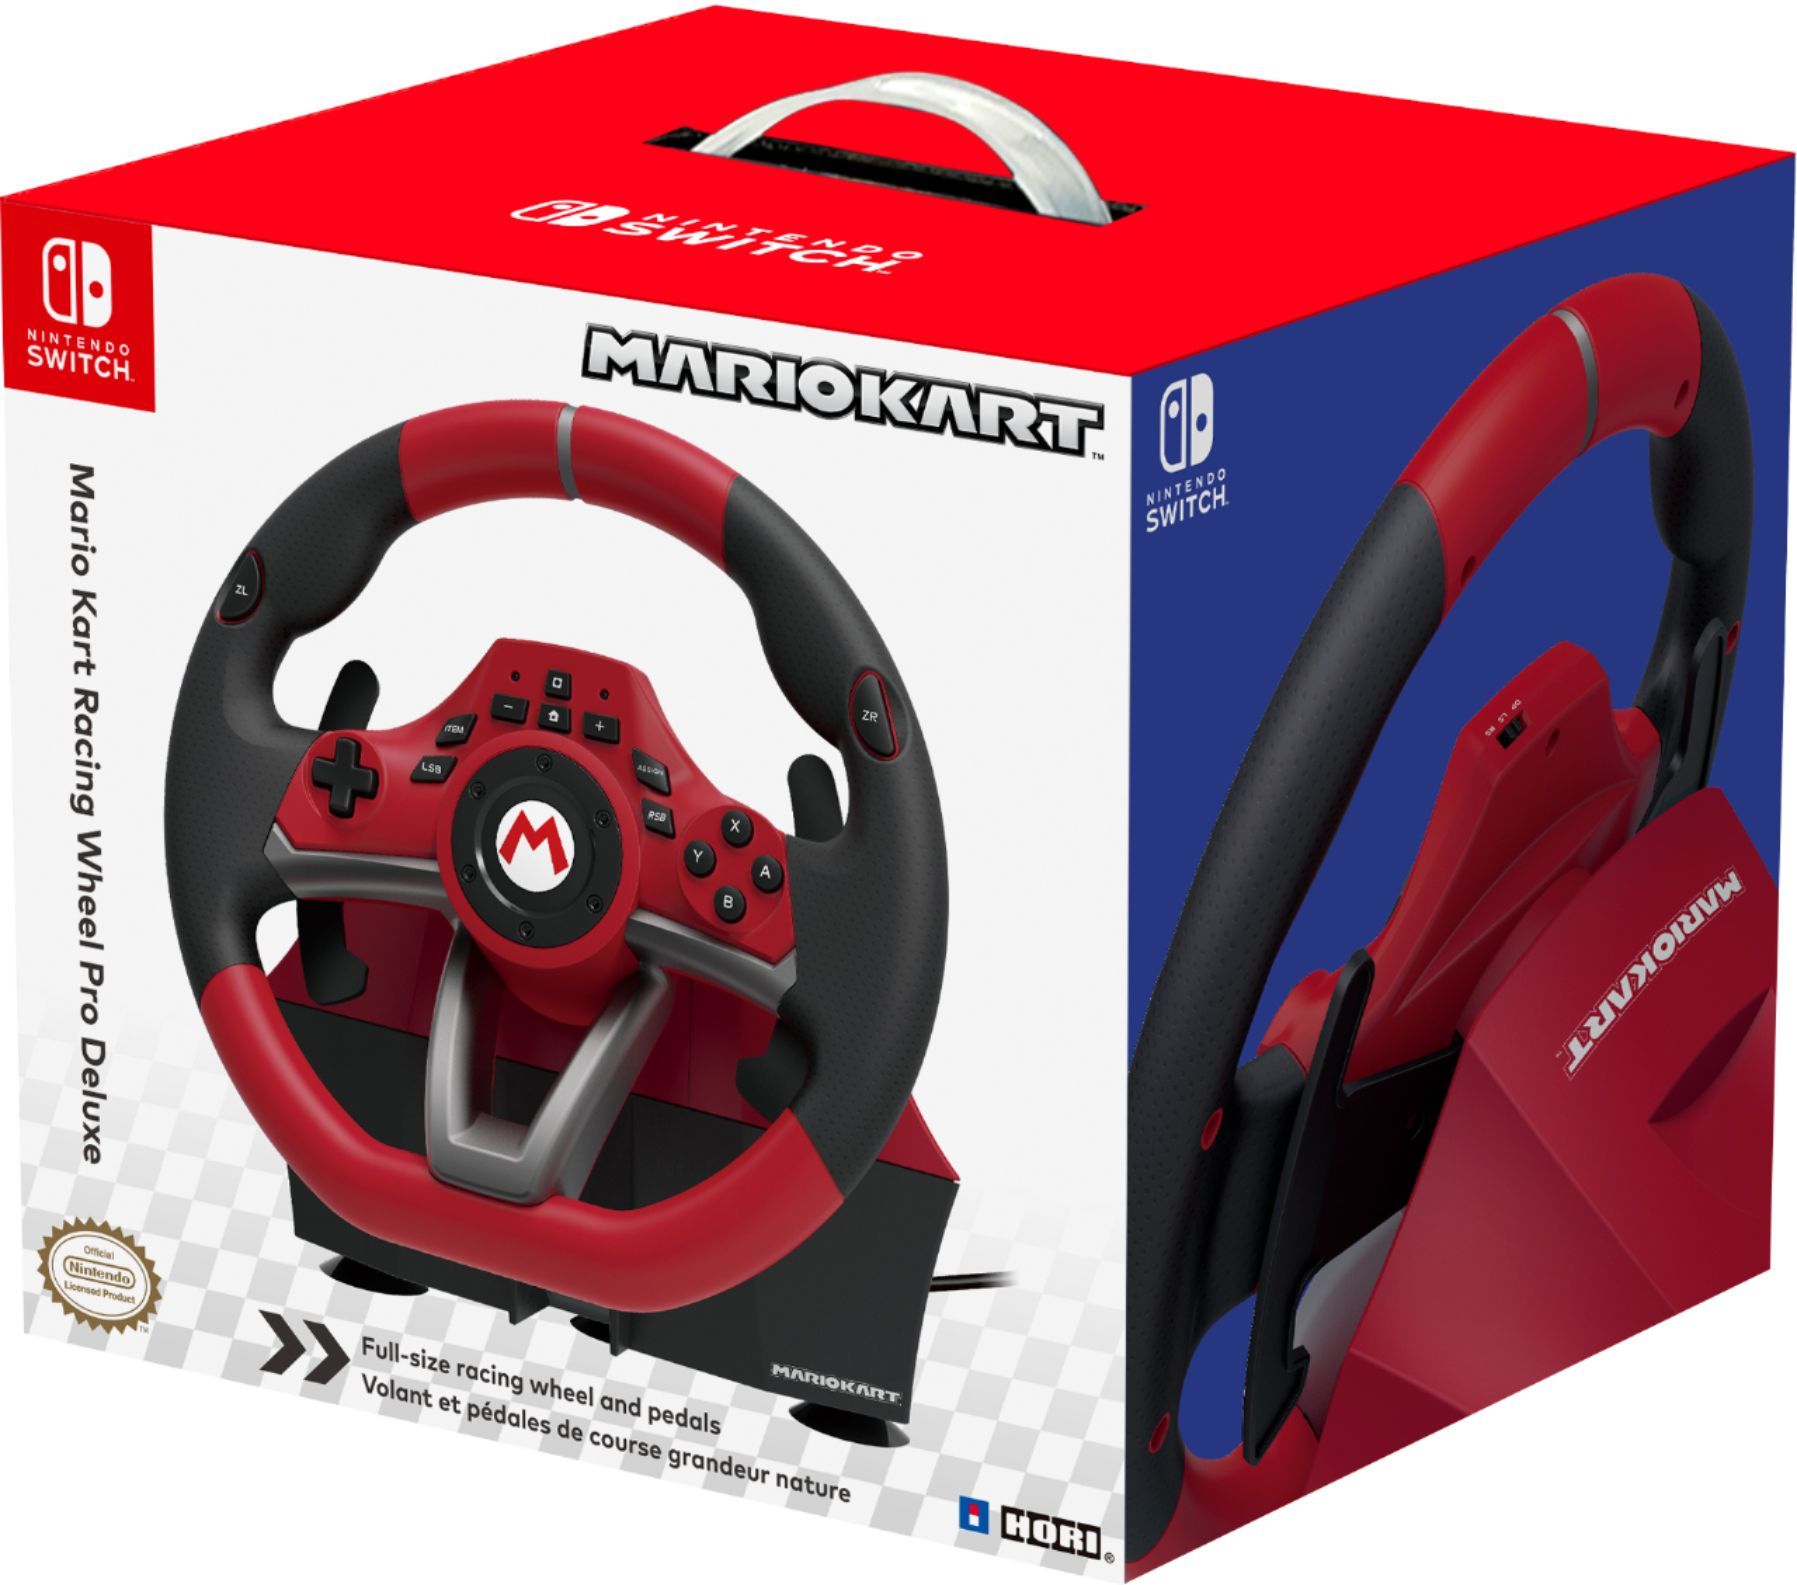 Hori Mario Kart Racing Pro Deluxe for Nintendo Switch Red NSW-228U - Best Buy | Best Buy U.S.